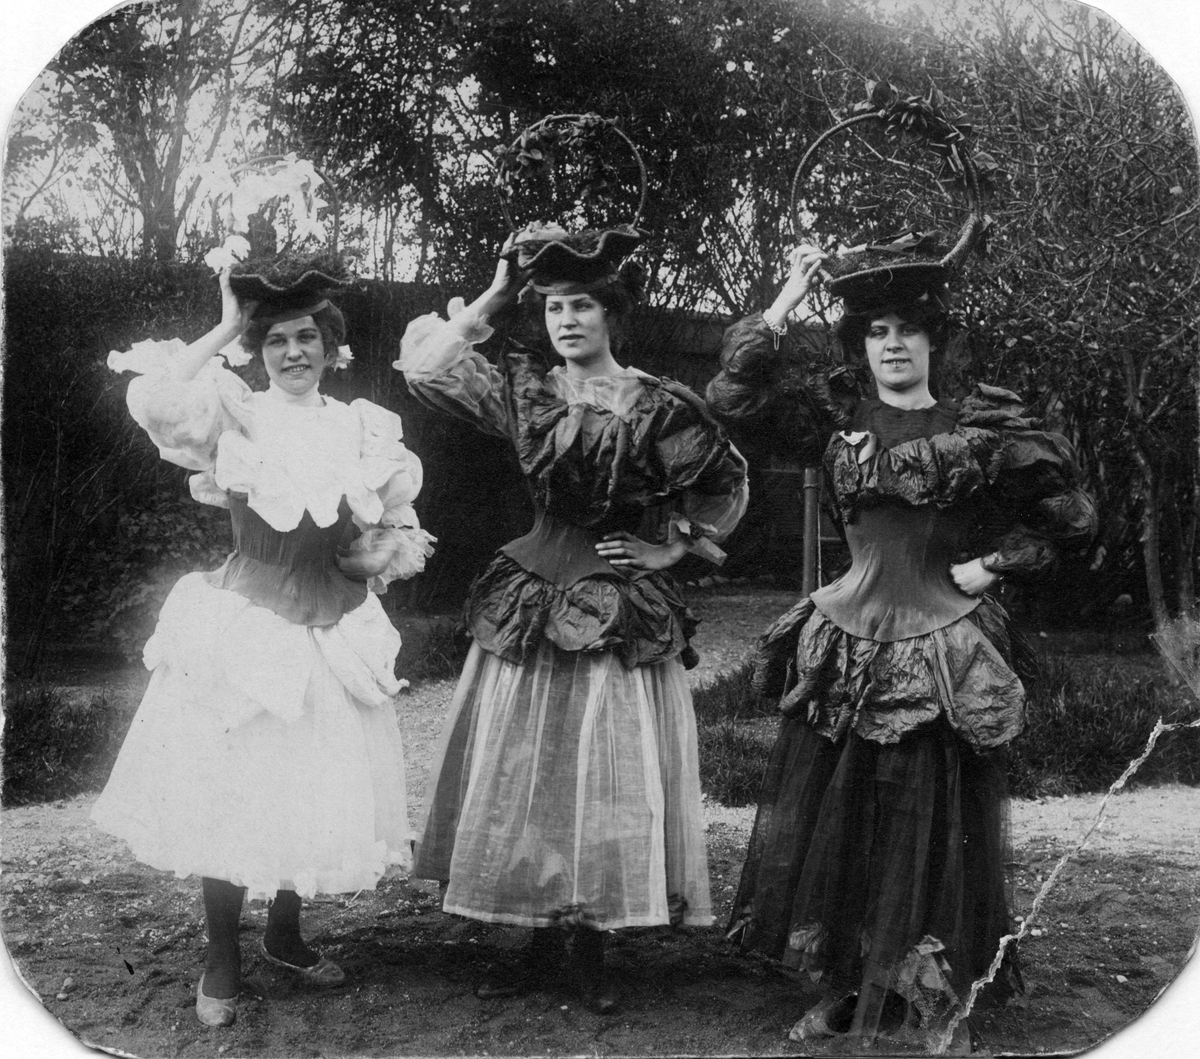 Från Barnens Dag i Gävle, troligtvis 1904.
Döttrar till boktryckare Emil Blom (1863-1915). Från vänster: Lisa, Signe och Linnea Blom.